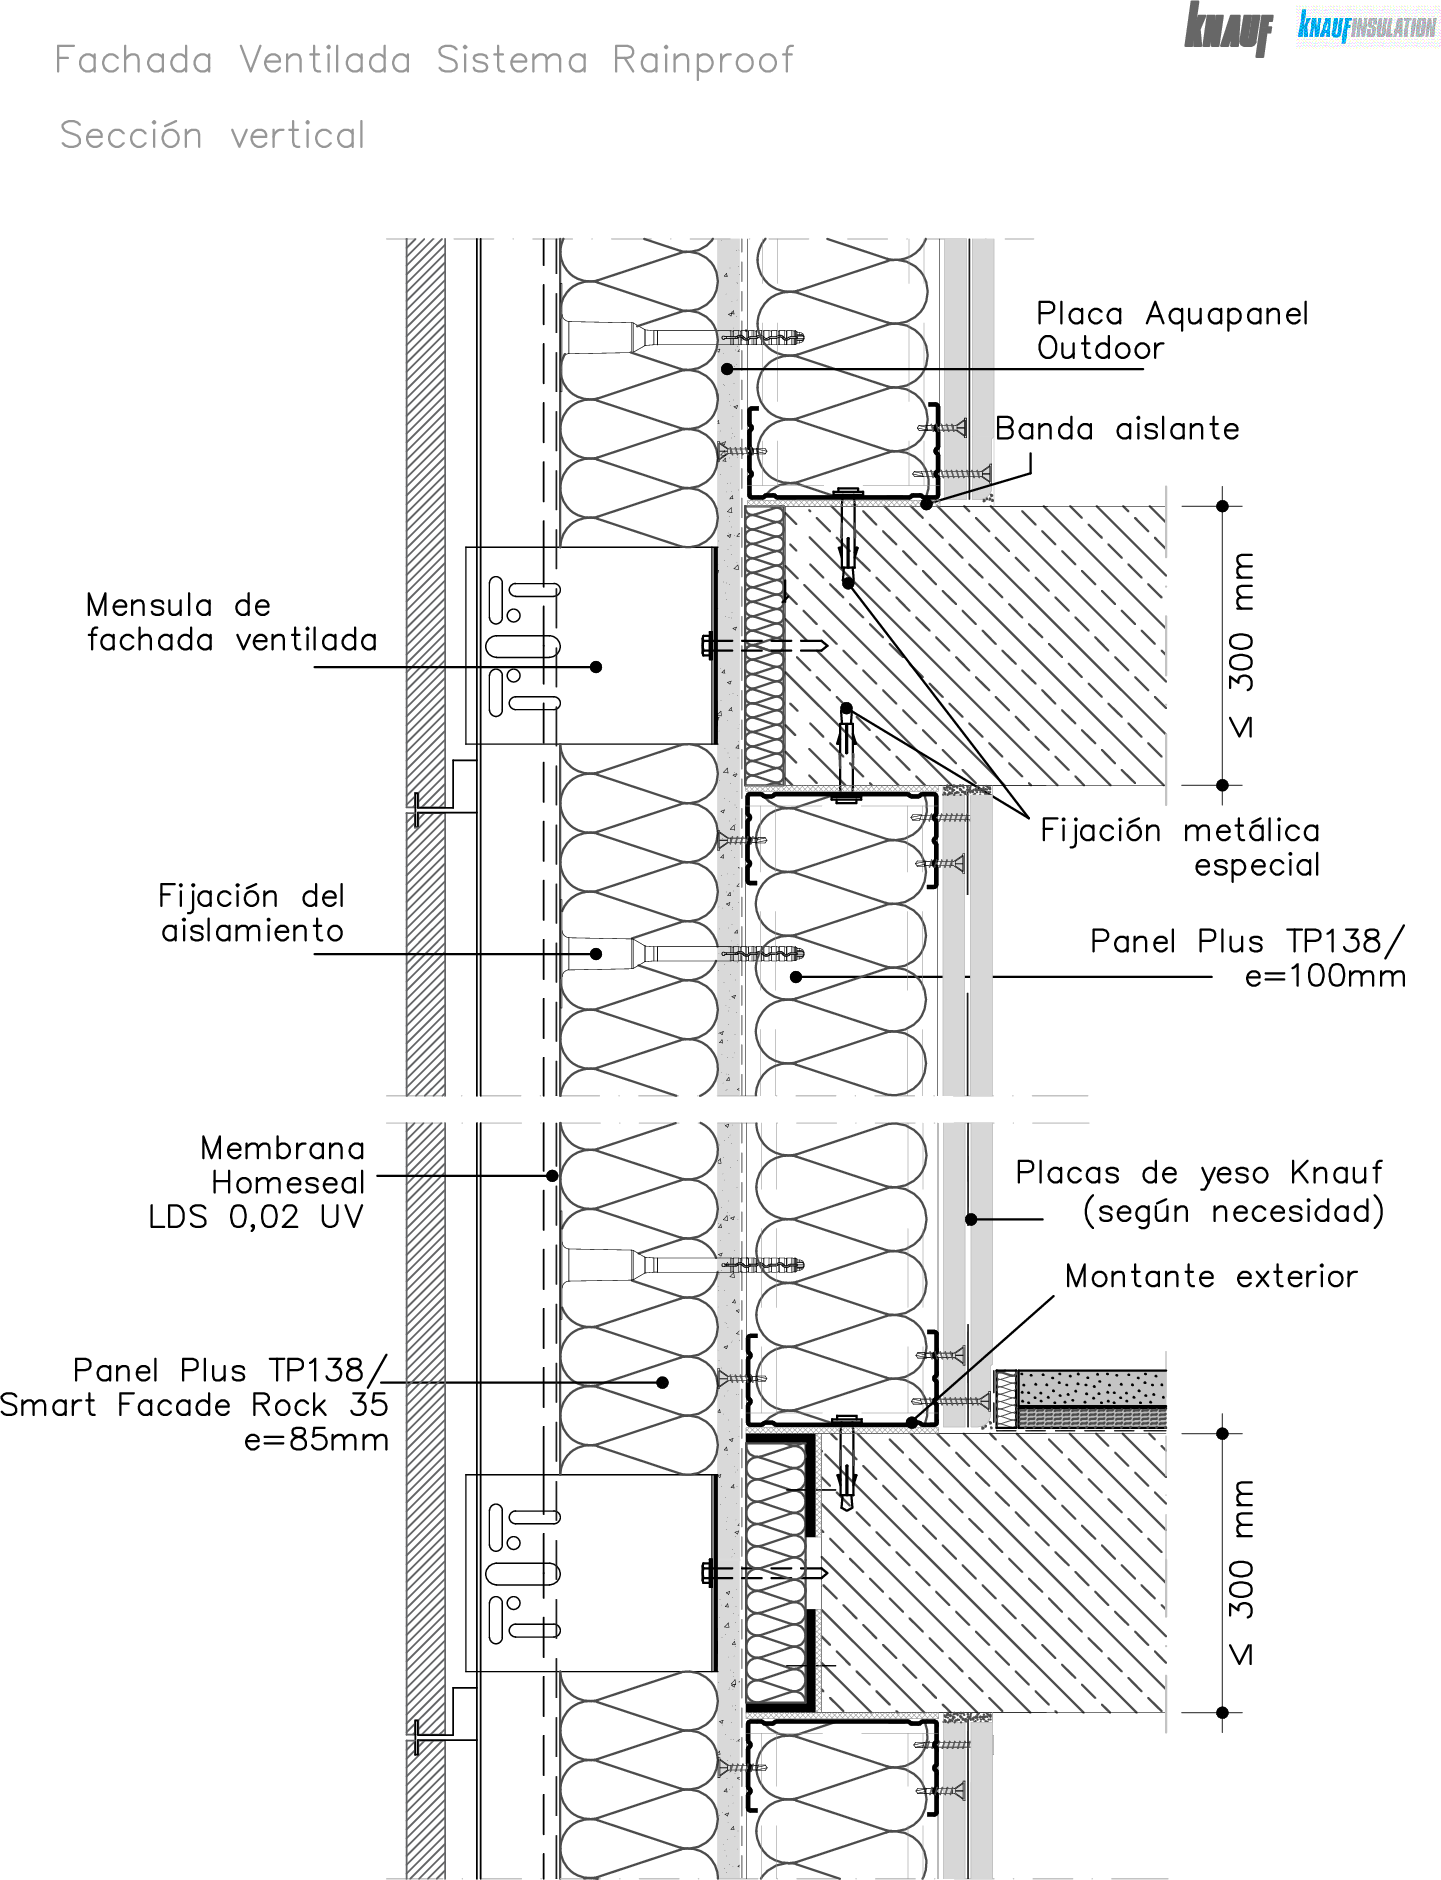 Fachada ligera ventilada Rainproof - sección vertical